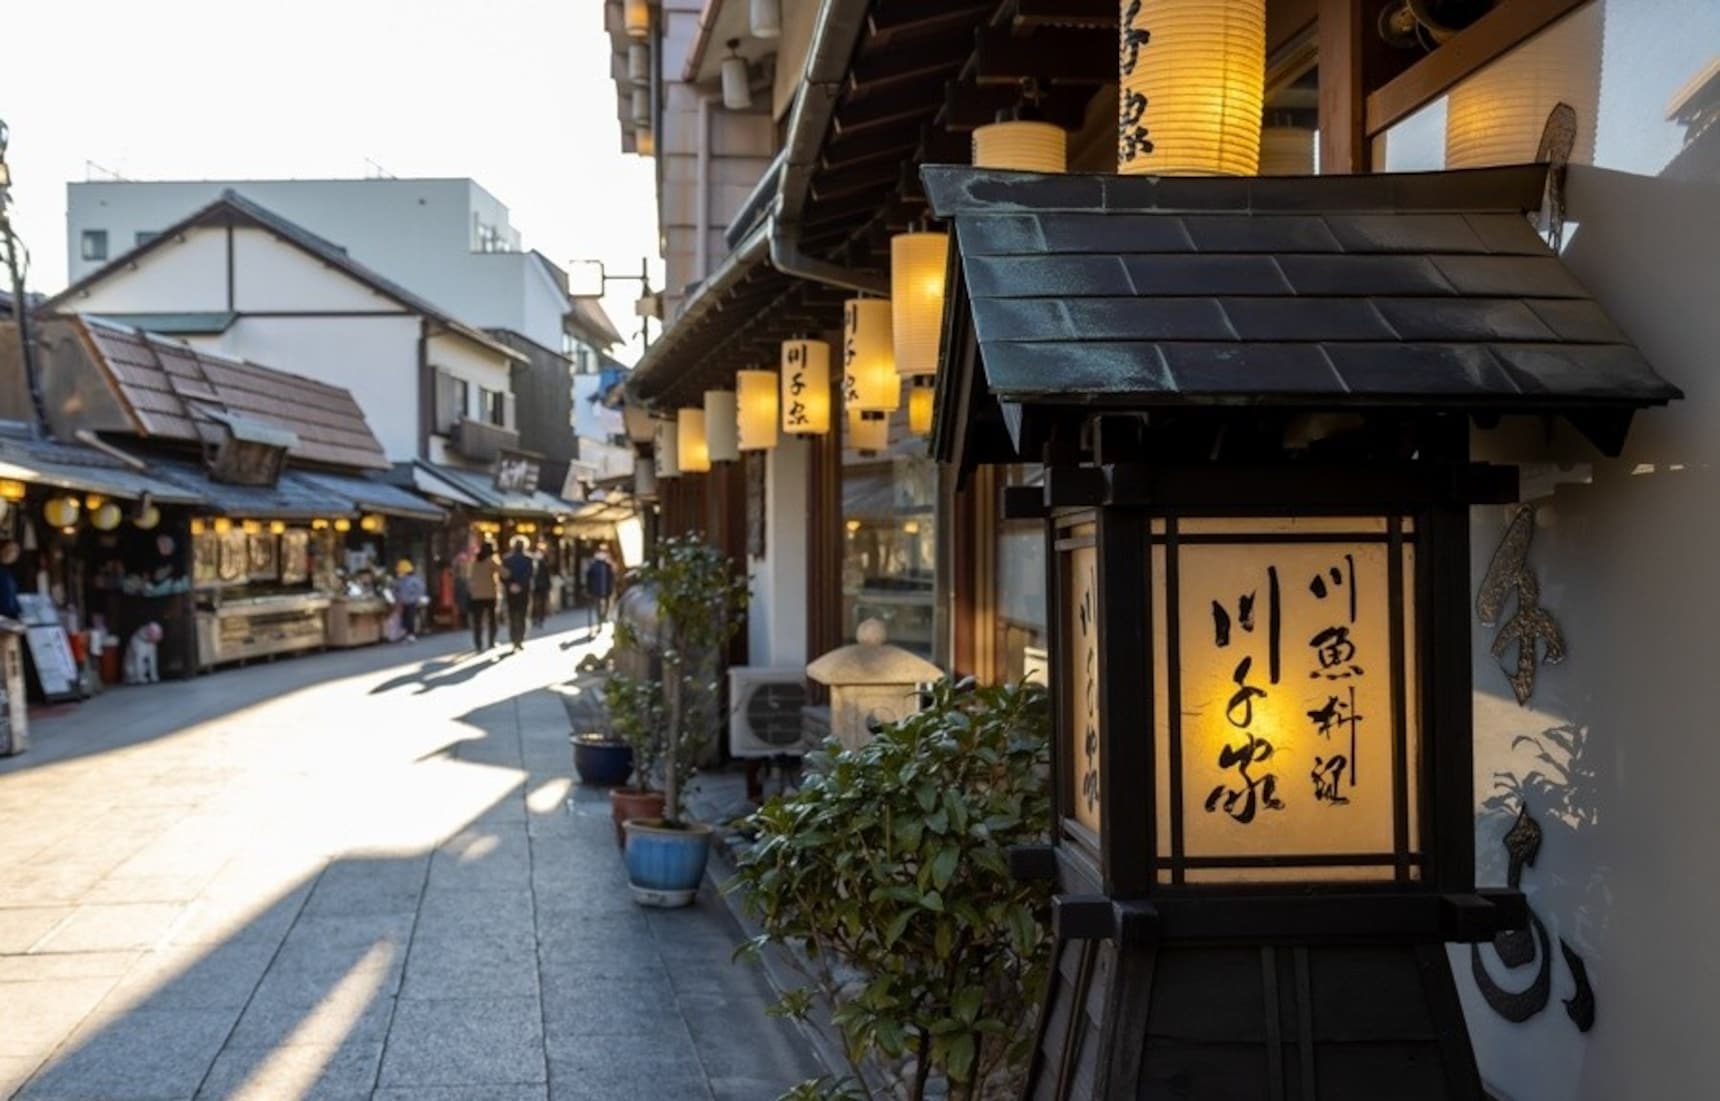 食在东京：三种吃法、四次满足！到拥有250年历史的鳗鱼饭老店“川千家”感受元祖鱼料理